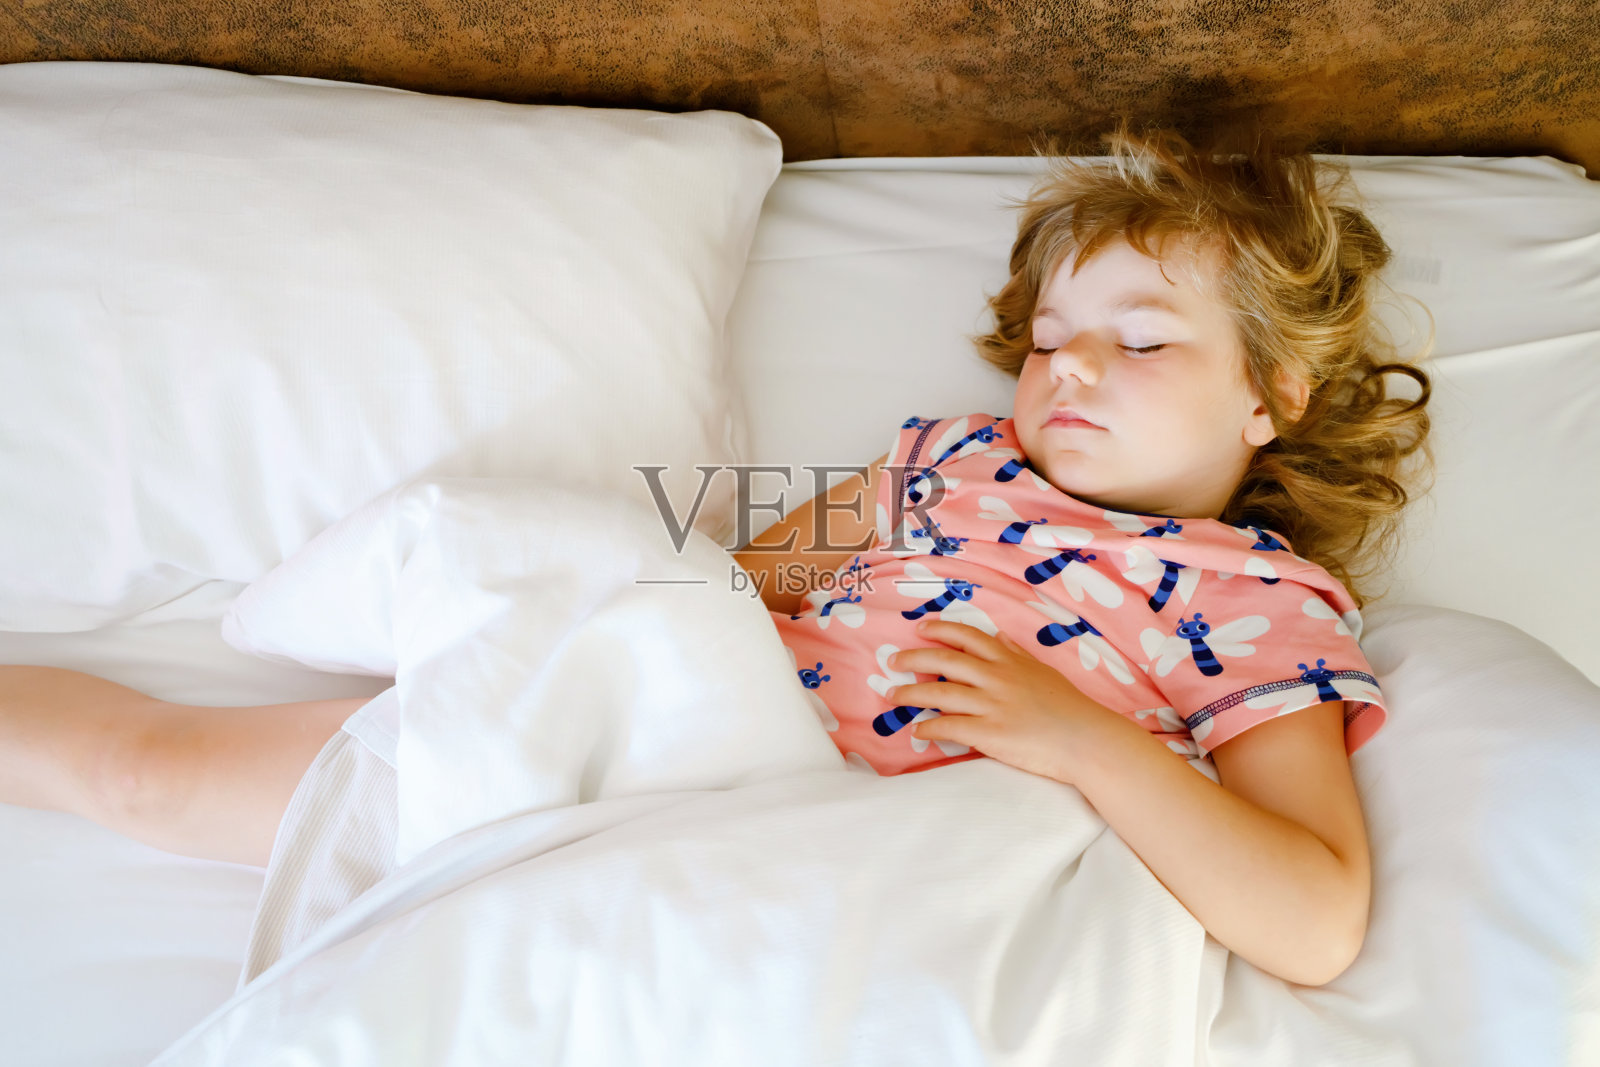 睡在床上做梦的男孩 向量例证. 插画 包括有 鬼魂, 是的, 蛋糕, 删去的, 孩子, 小睡, 哔哔, 梦想 - 192400806